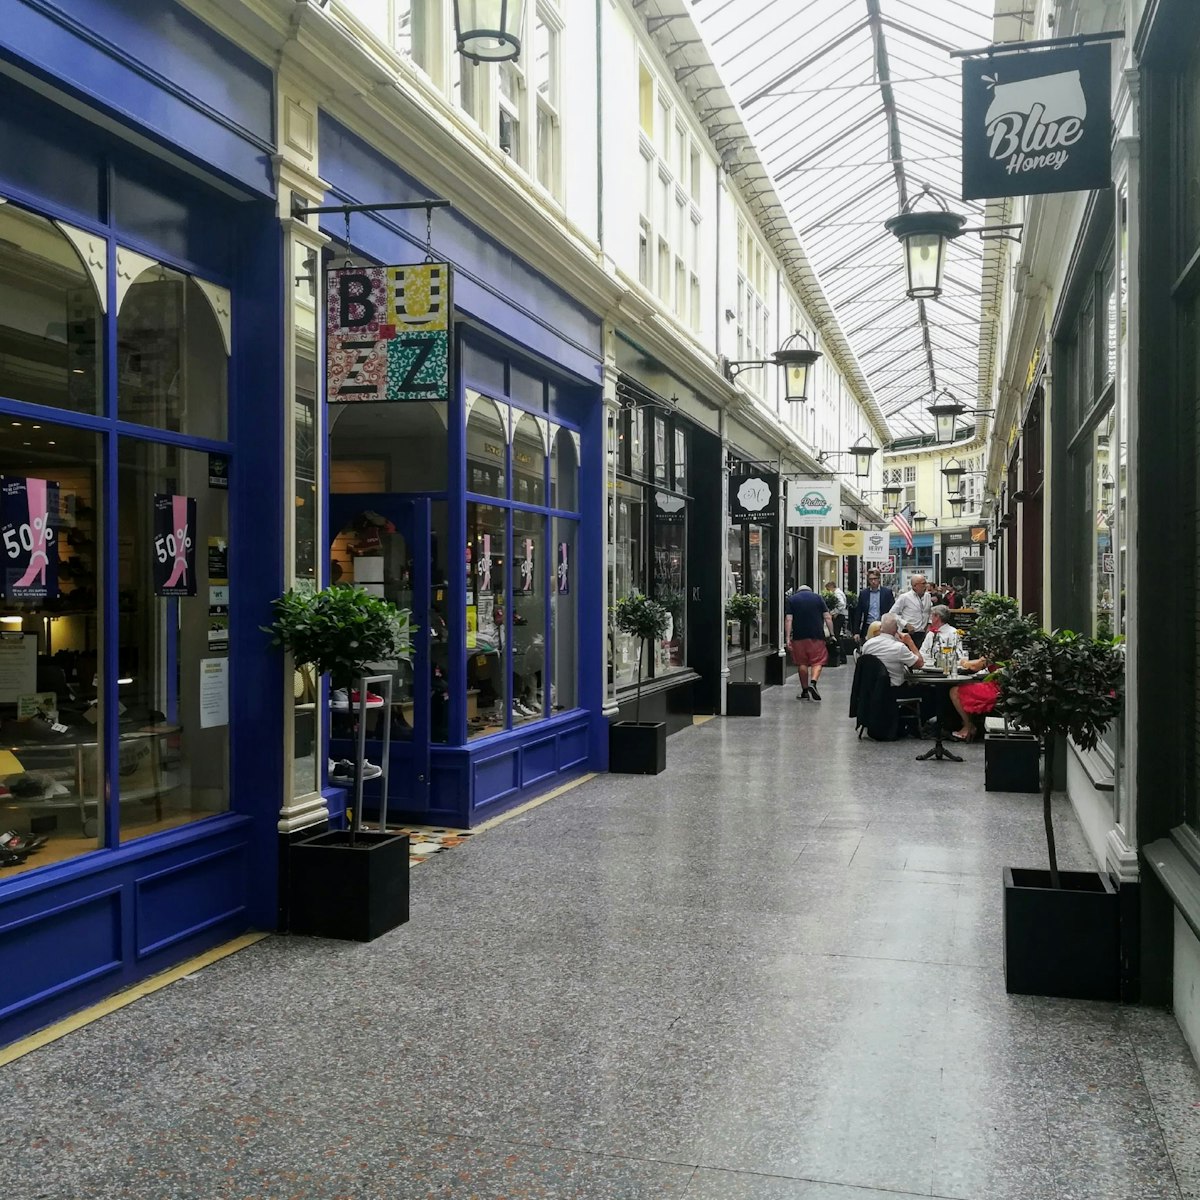 The arcade, High St & Duke St Arcades